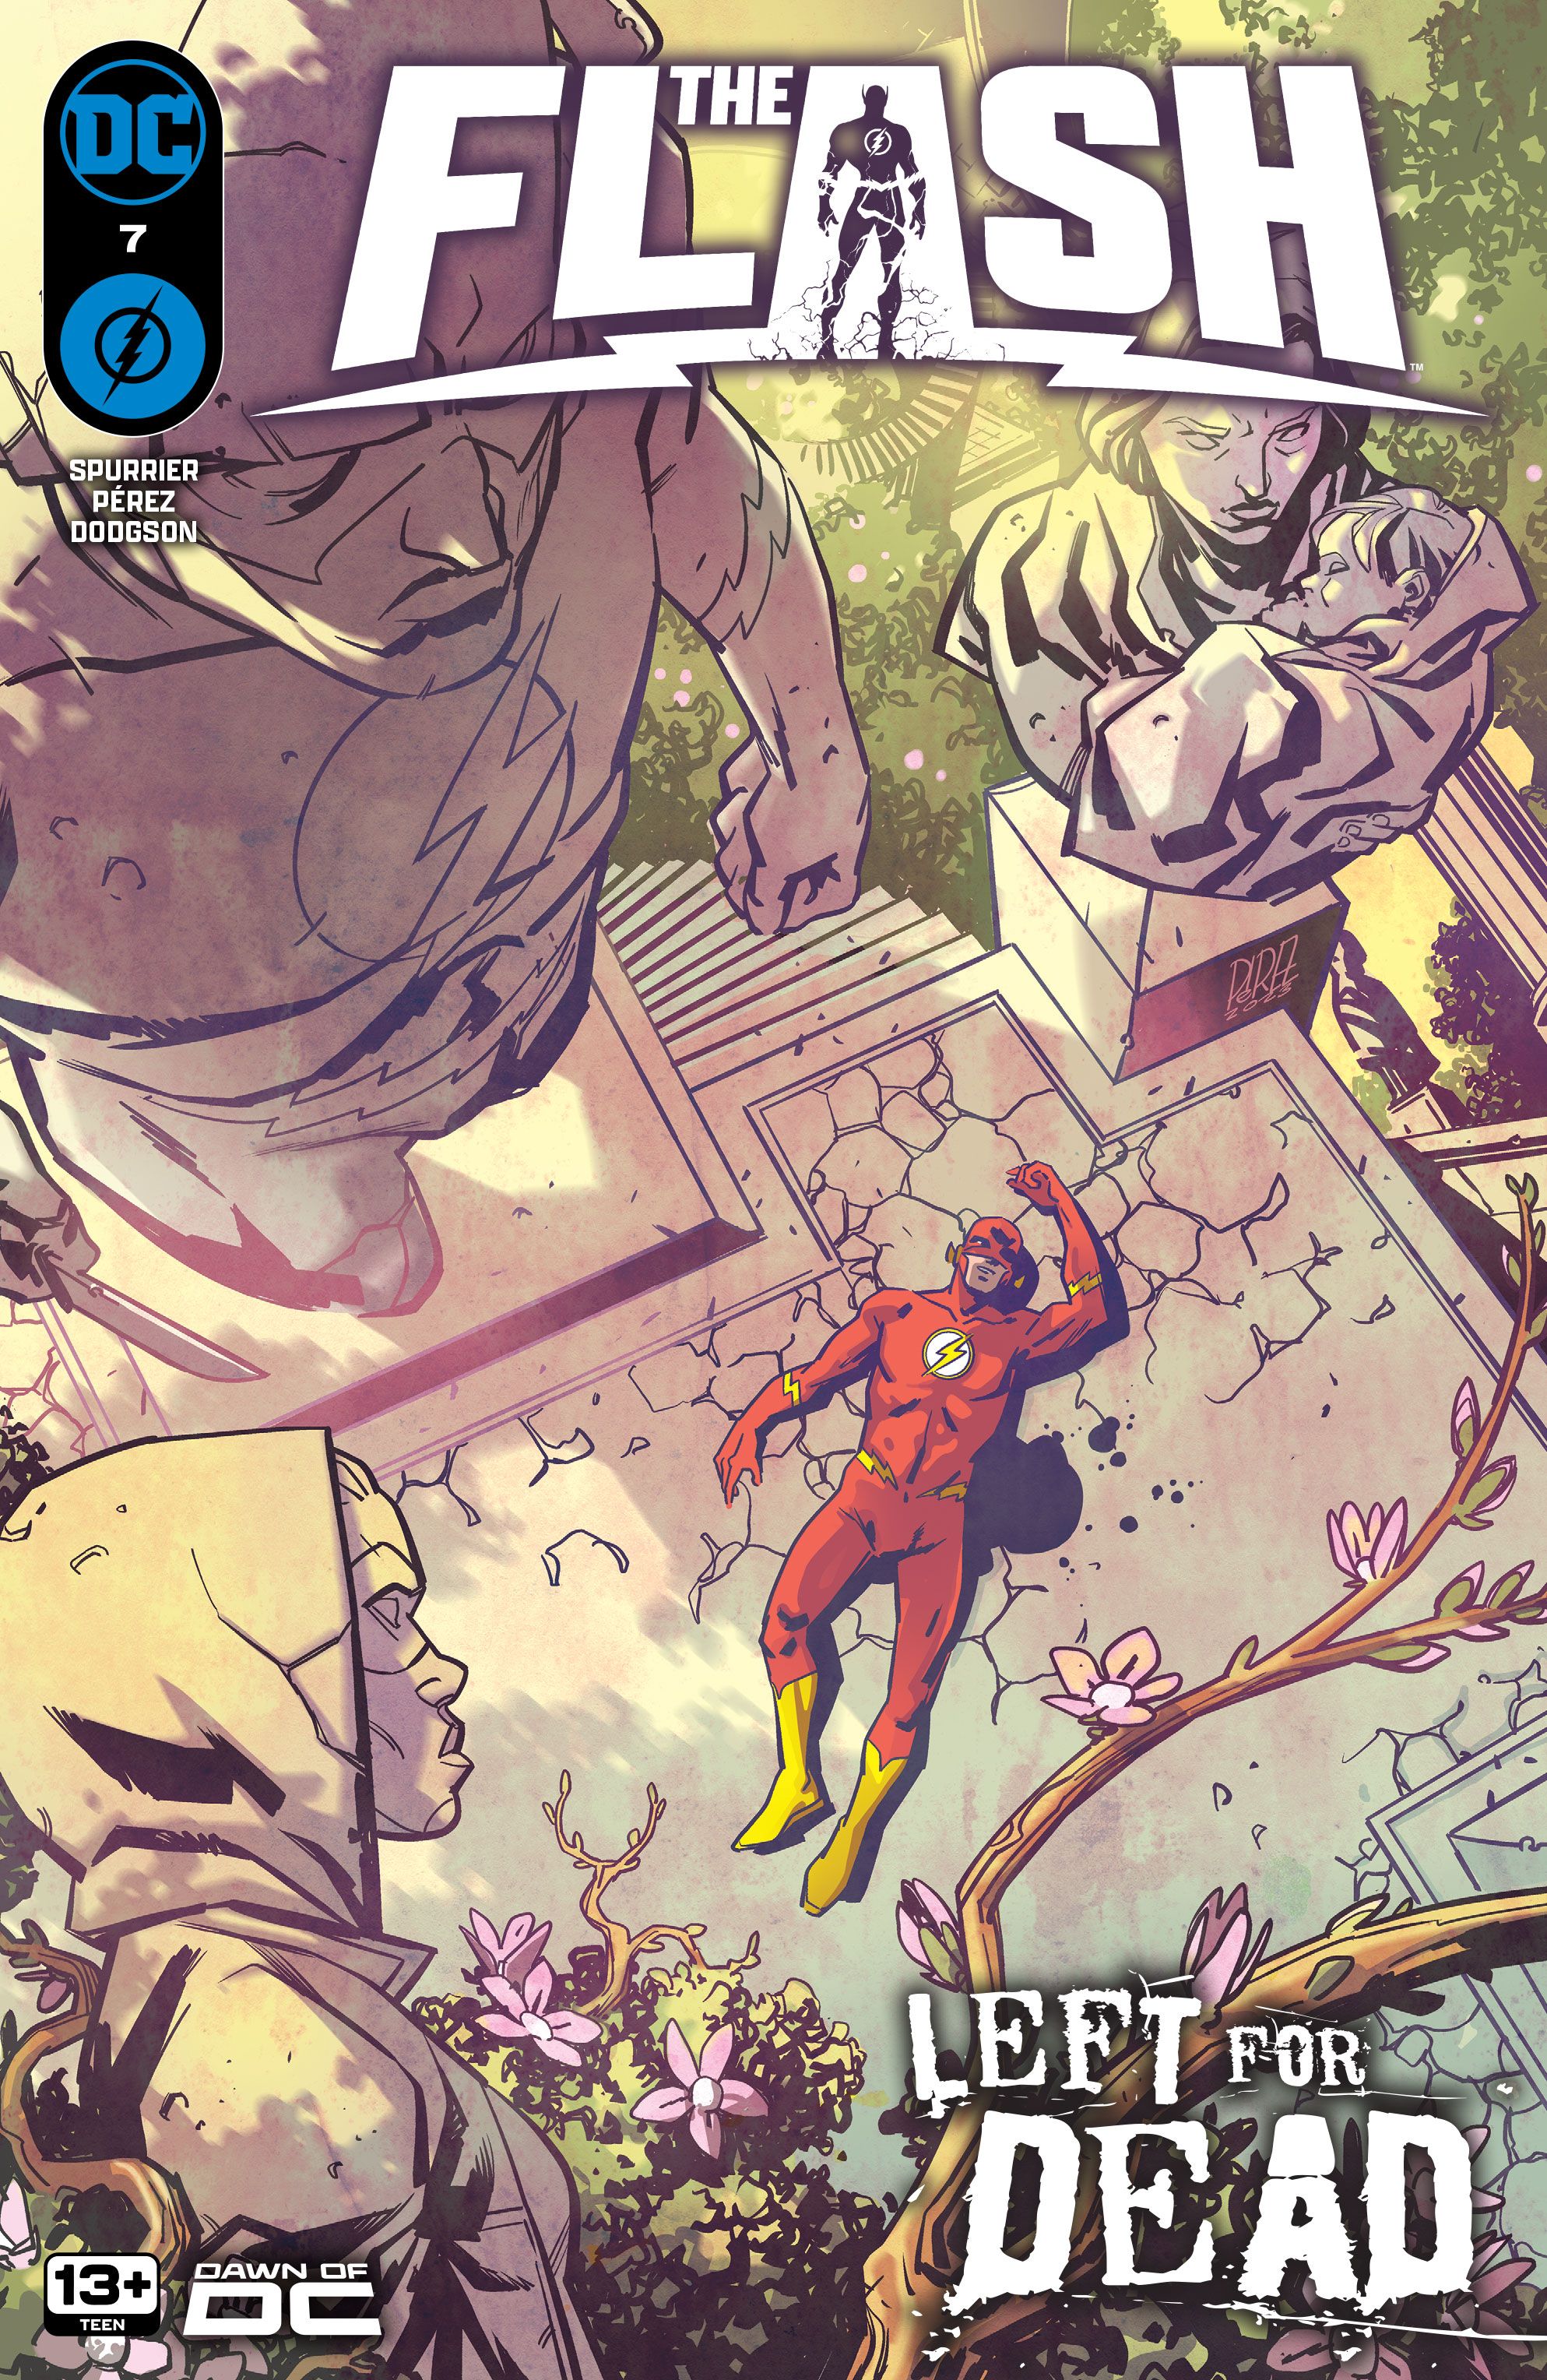 Capa principal de The Flash 7: Flash está inconsciente em um jardim idílico.